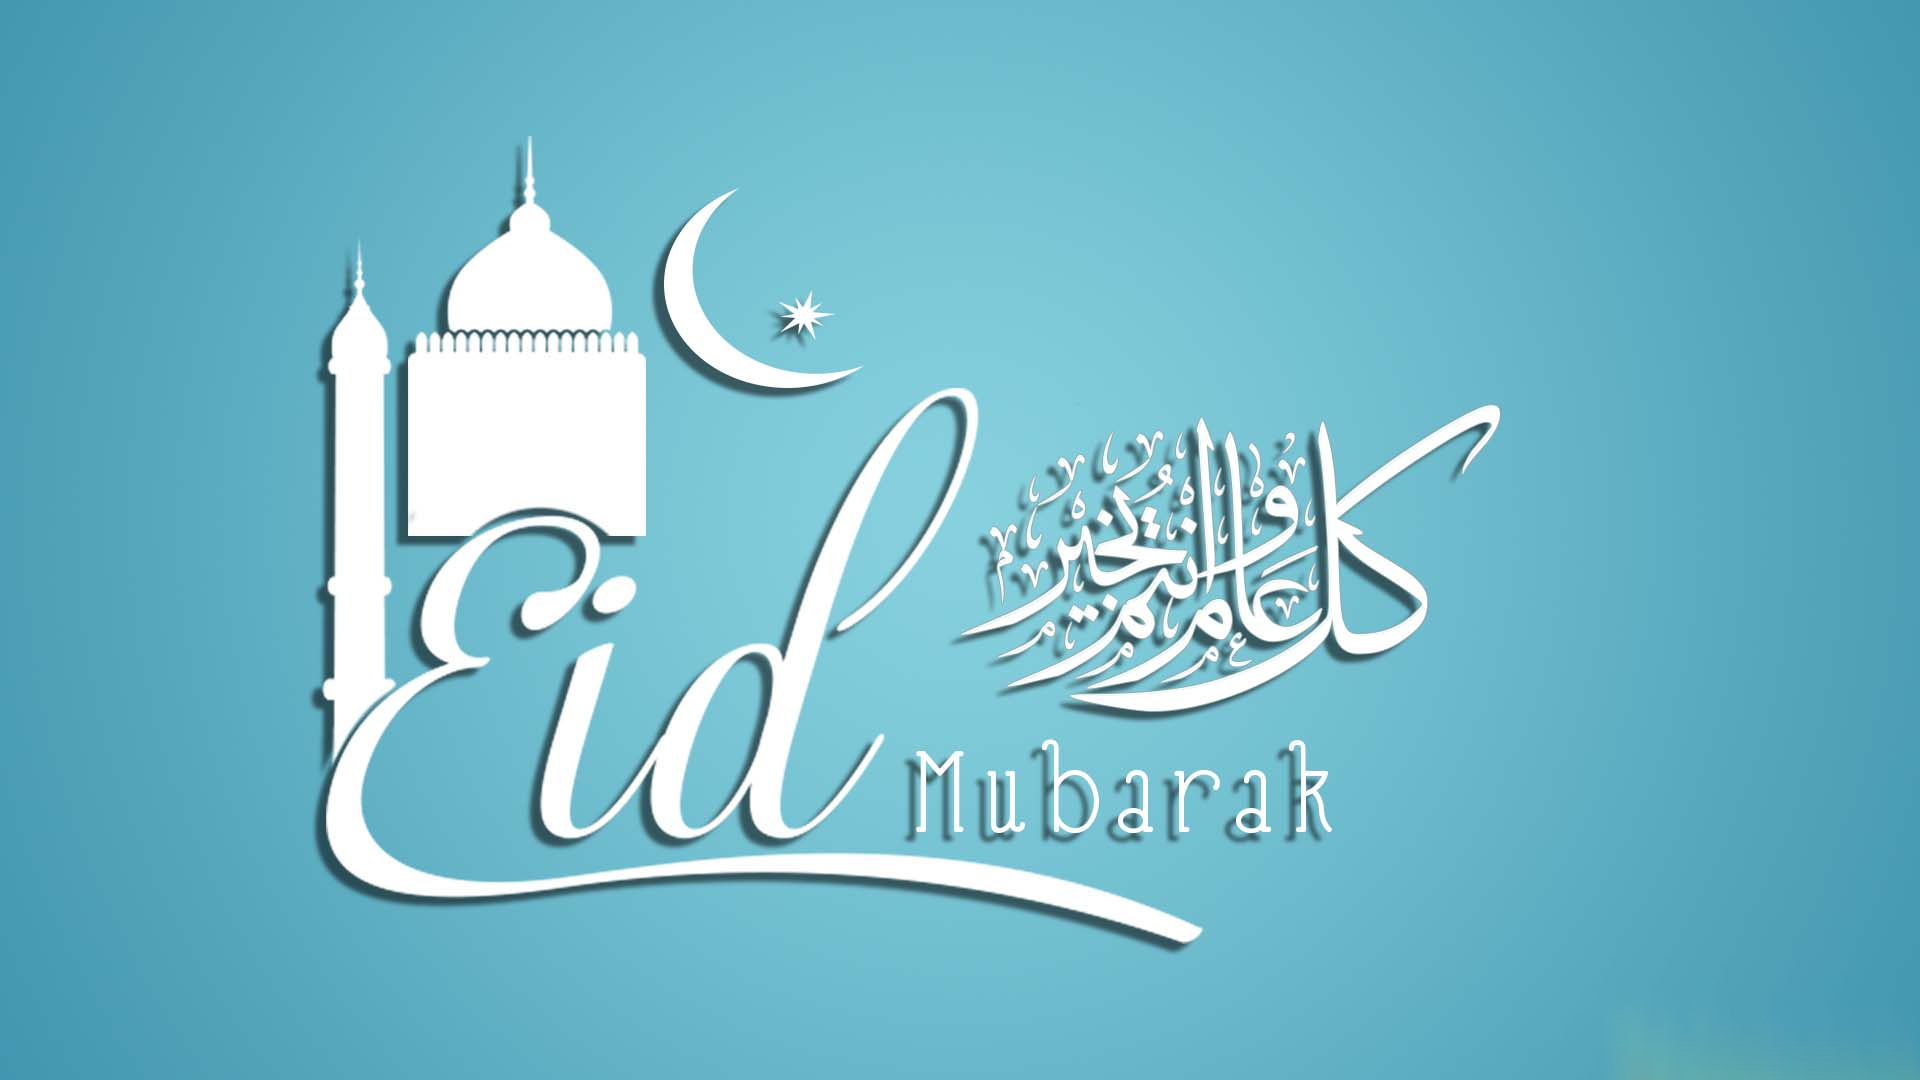 Eid Mubarak Wishes - Eid Al Adha Hd - 1920x1080 Wallpaper 